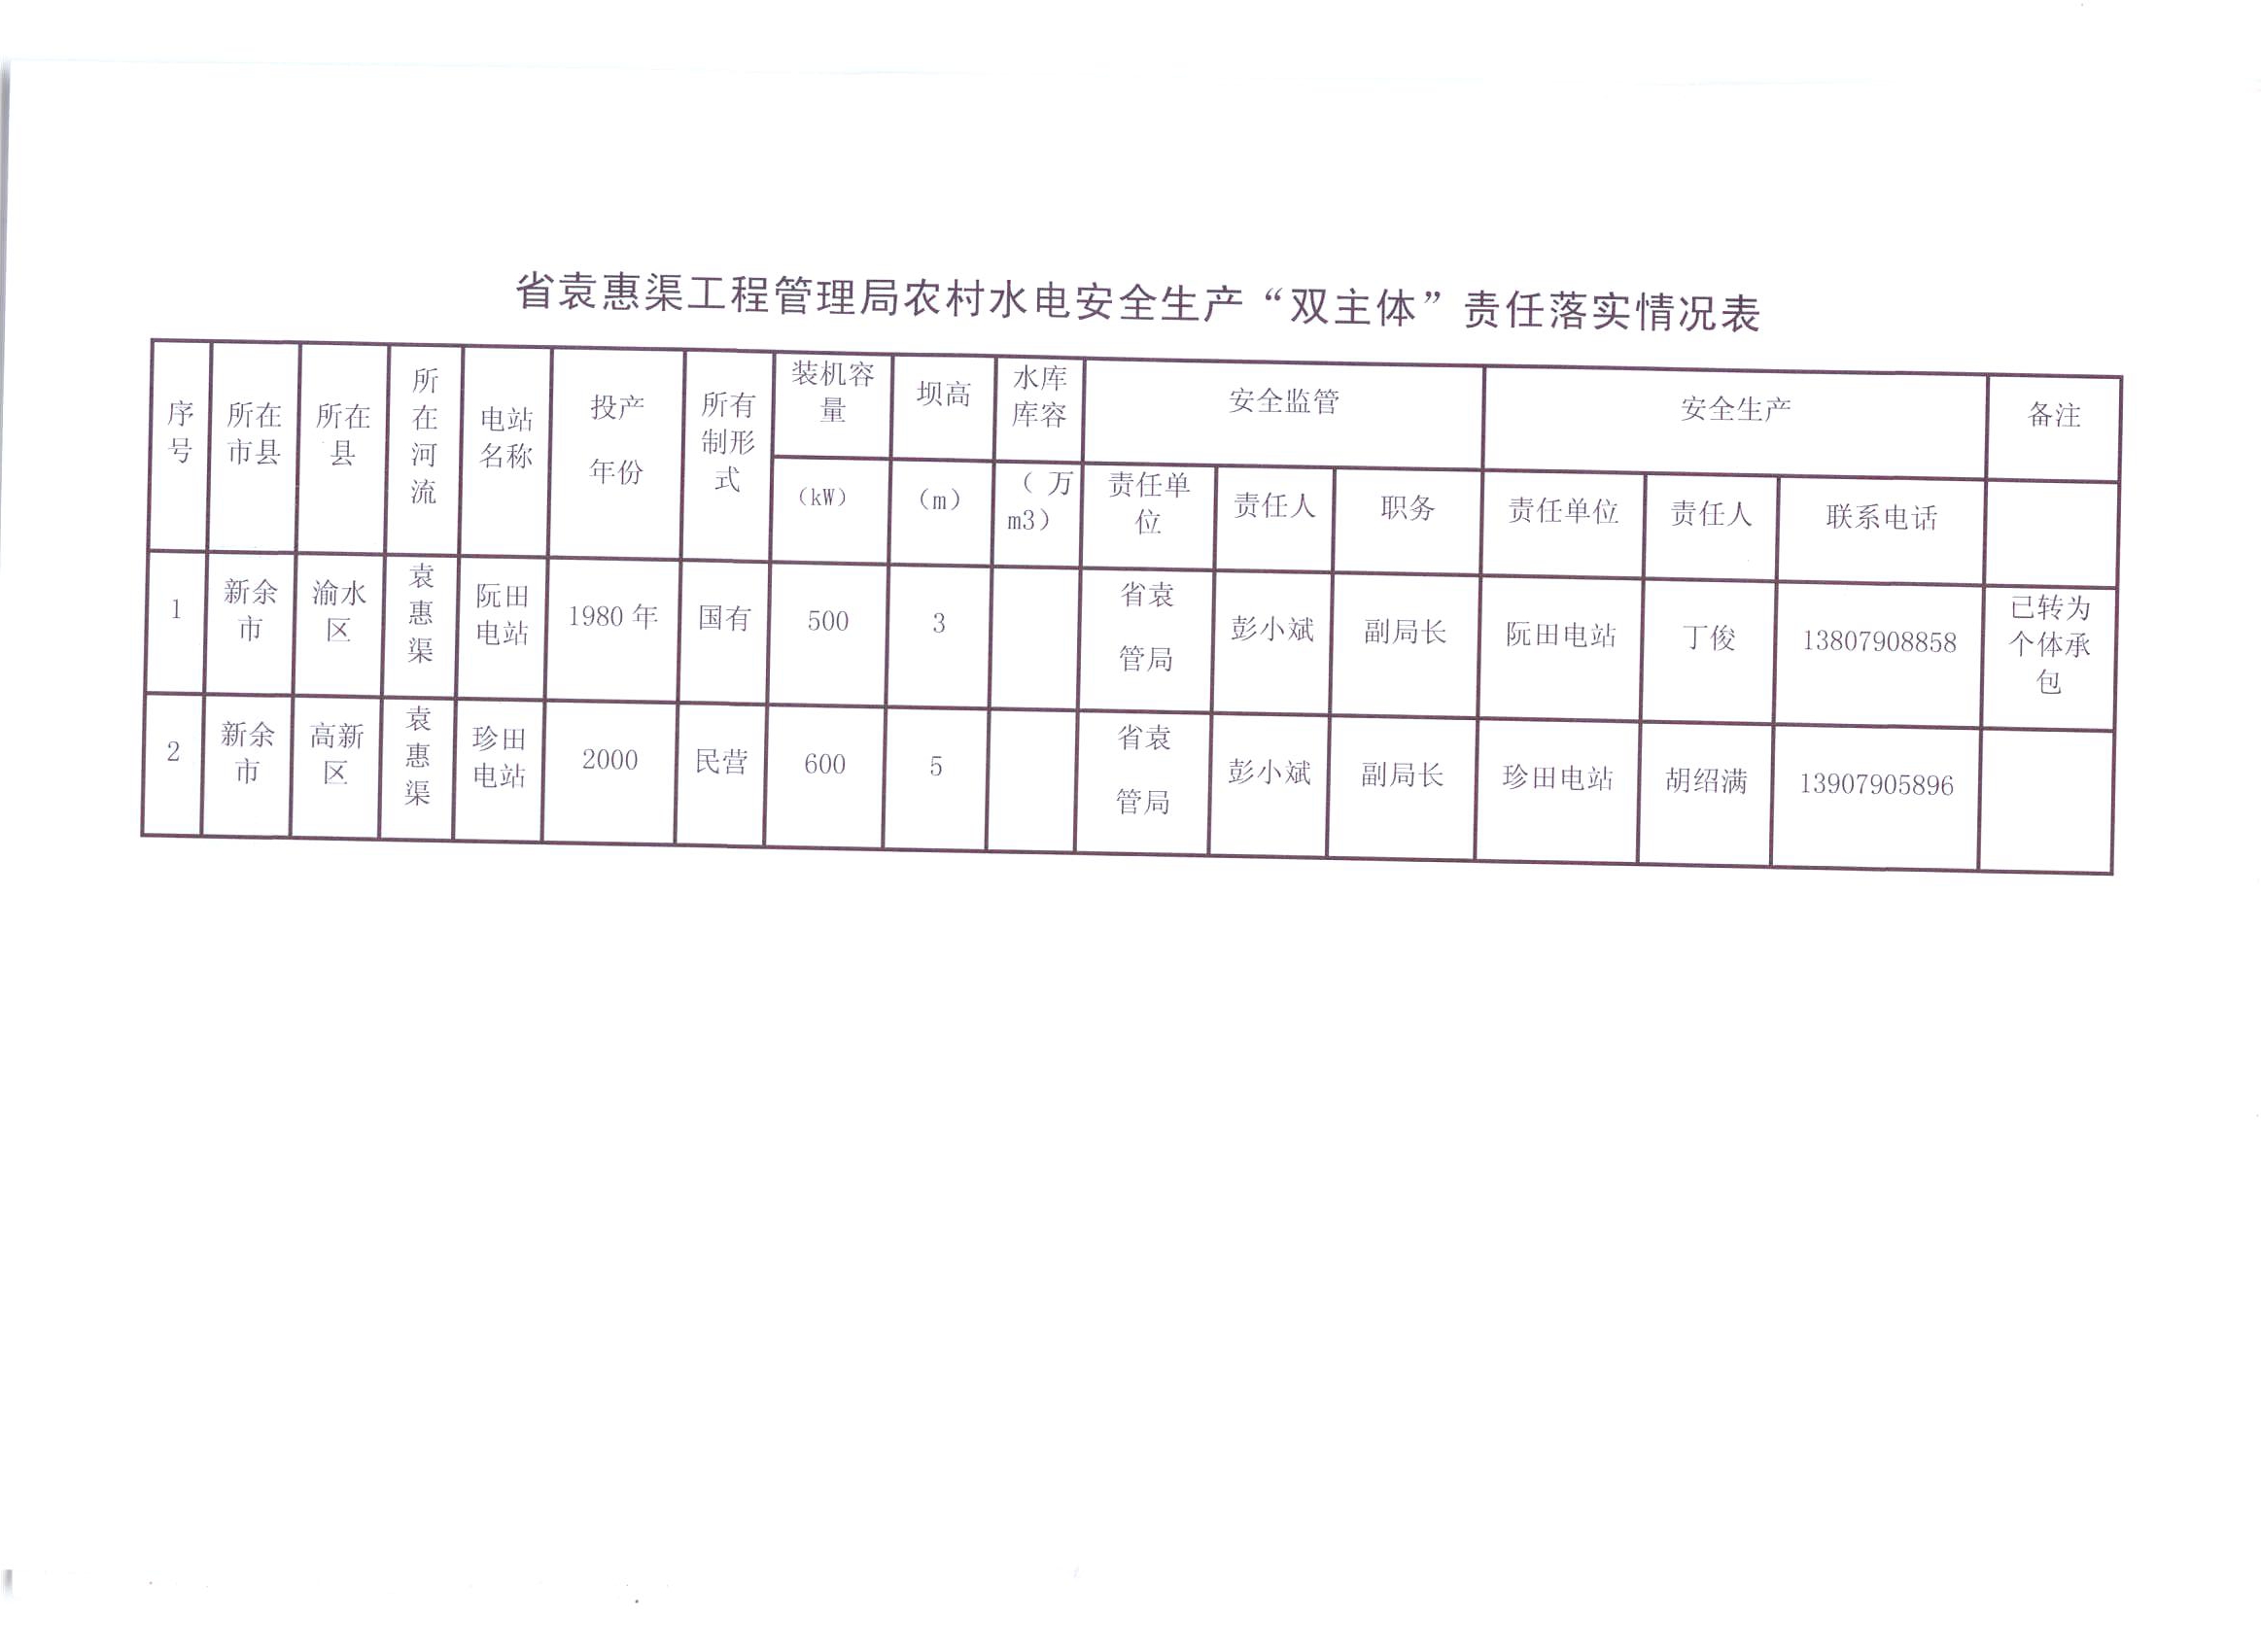 省袁管局农村水电站安全生产“双主体”责任落实情况表